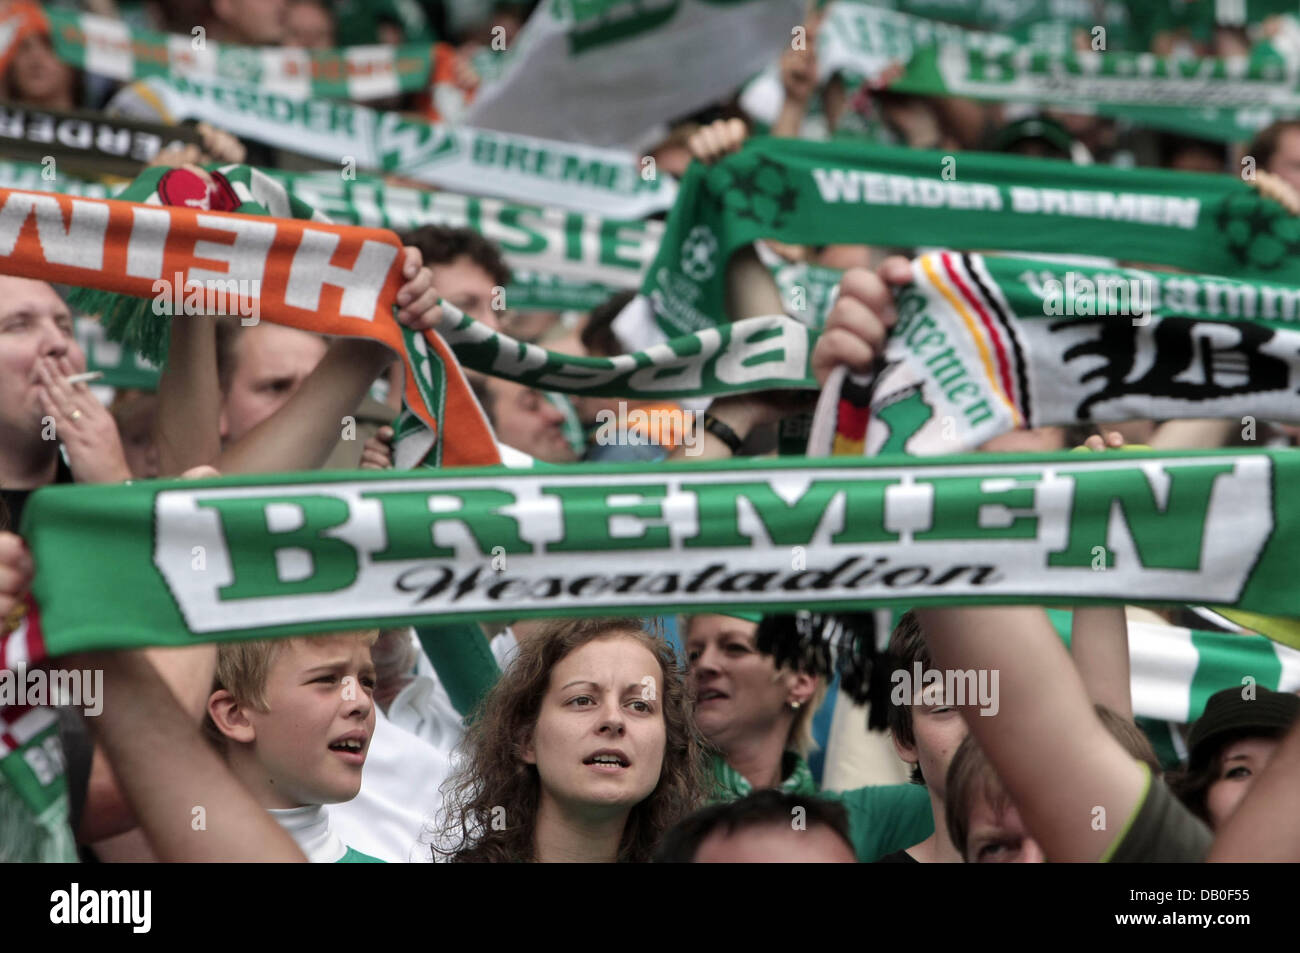 Bremen-Fans halten ihre Club-Schals, wie sie für ihre Mannschaft während des Spiels Werder Bremen vs. Bayern München in Bremen, Deutschland, 18. August 2007 jubeln. Foto: Ulrich Perrey Stockfoto